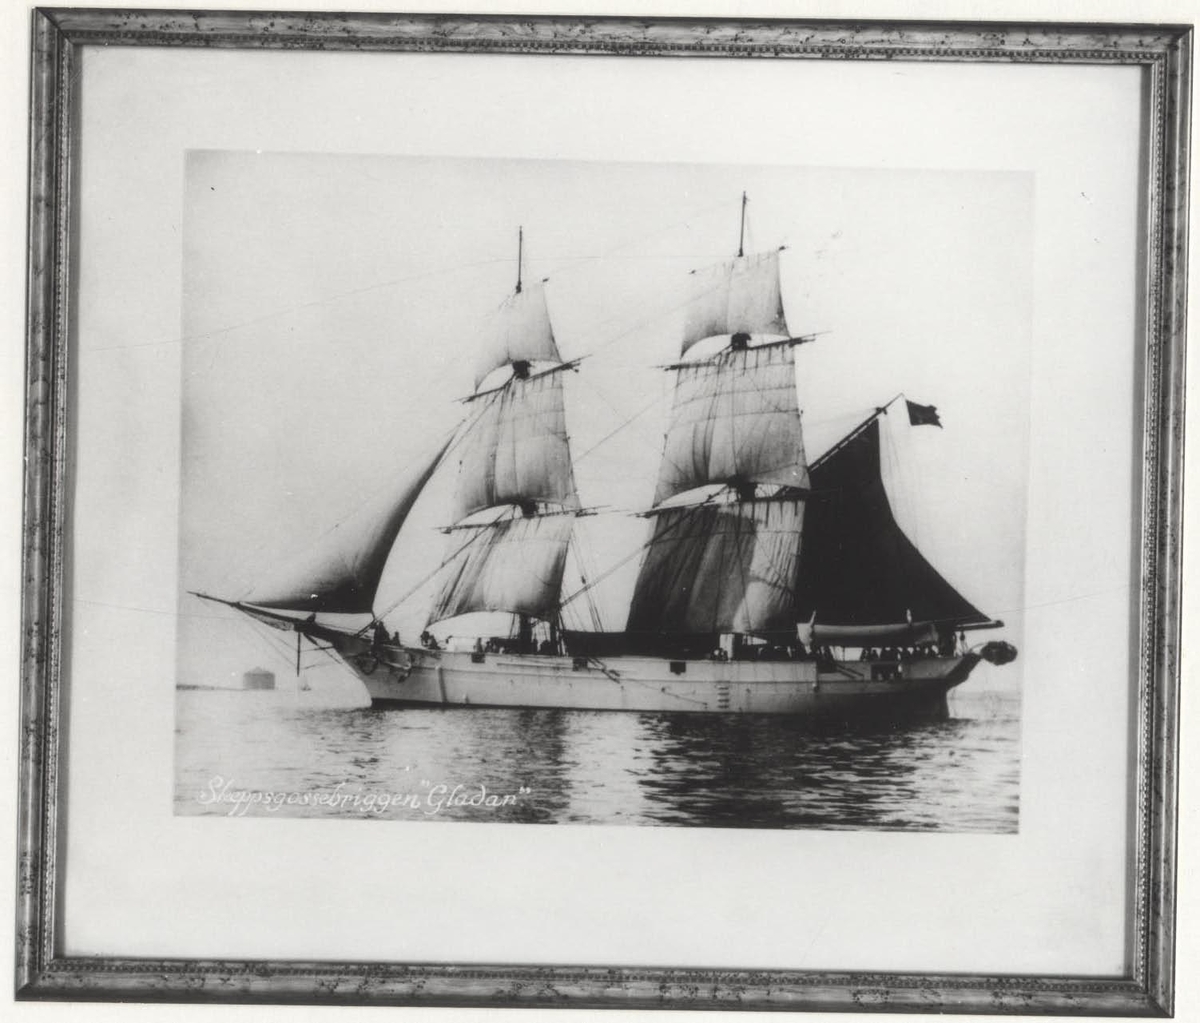 Inramat s/v fotografi av skeppet GLADAN avbildan från babords sida.